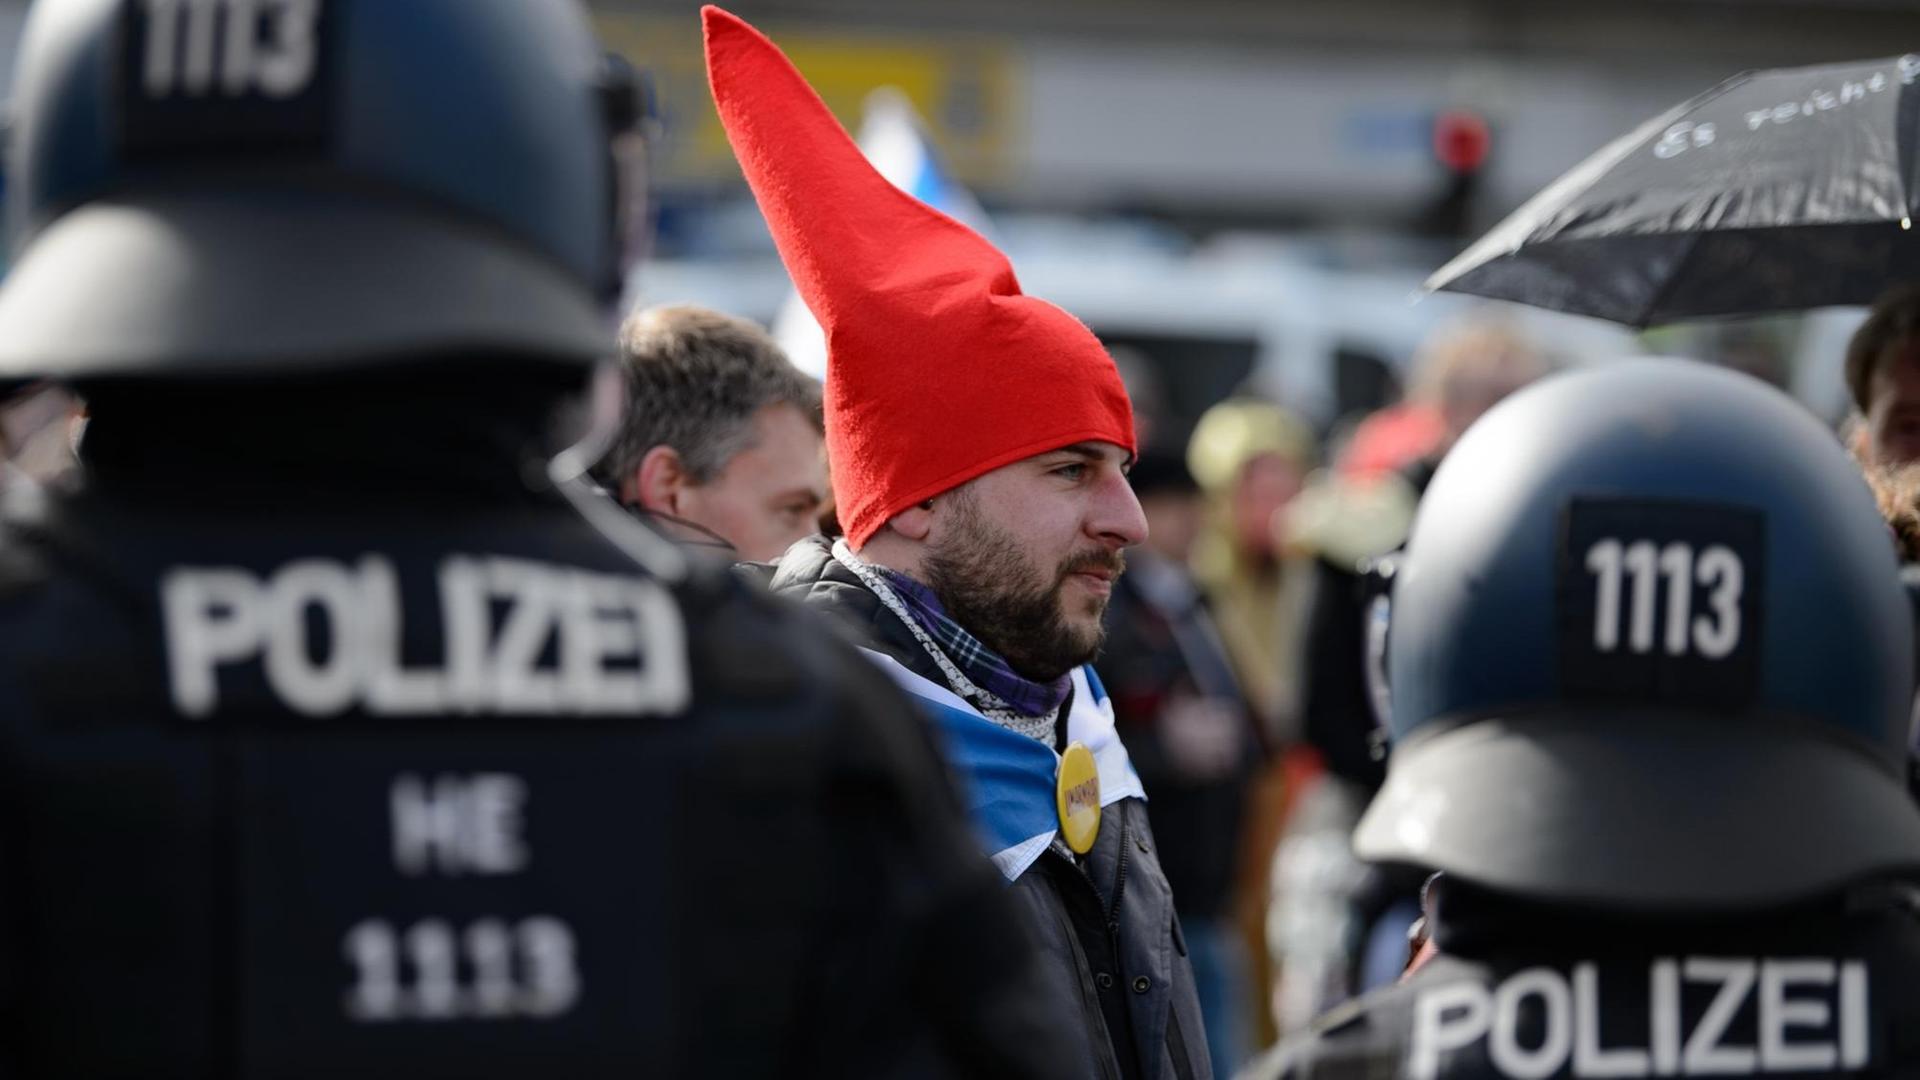 Ein Teilnehmer mit einer roten Zipfelmütze und ohen Mund-Nasen-Bedeckung steht bei einer Kundgebung unter dem Motto "Freie Bürger Kassel - Grundrechte und Demokratie" vor Polizisten.